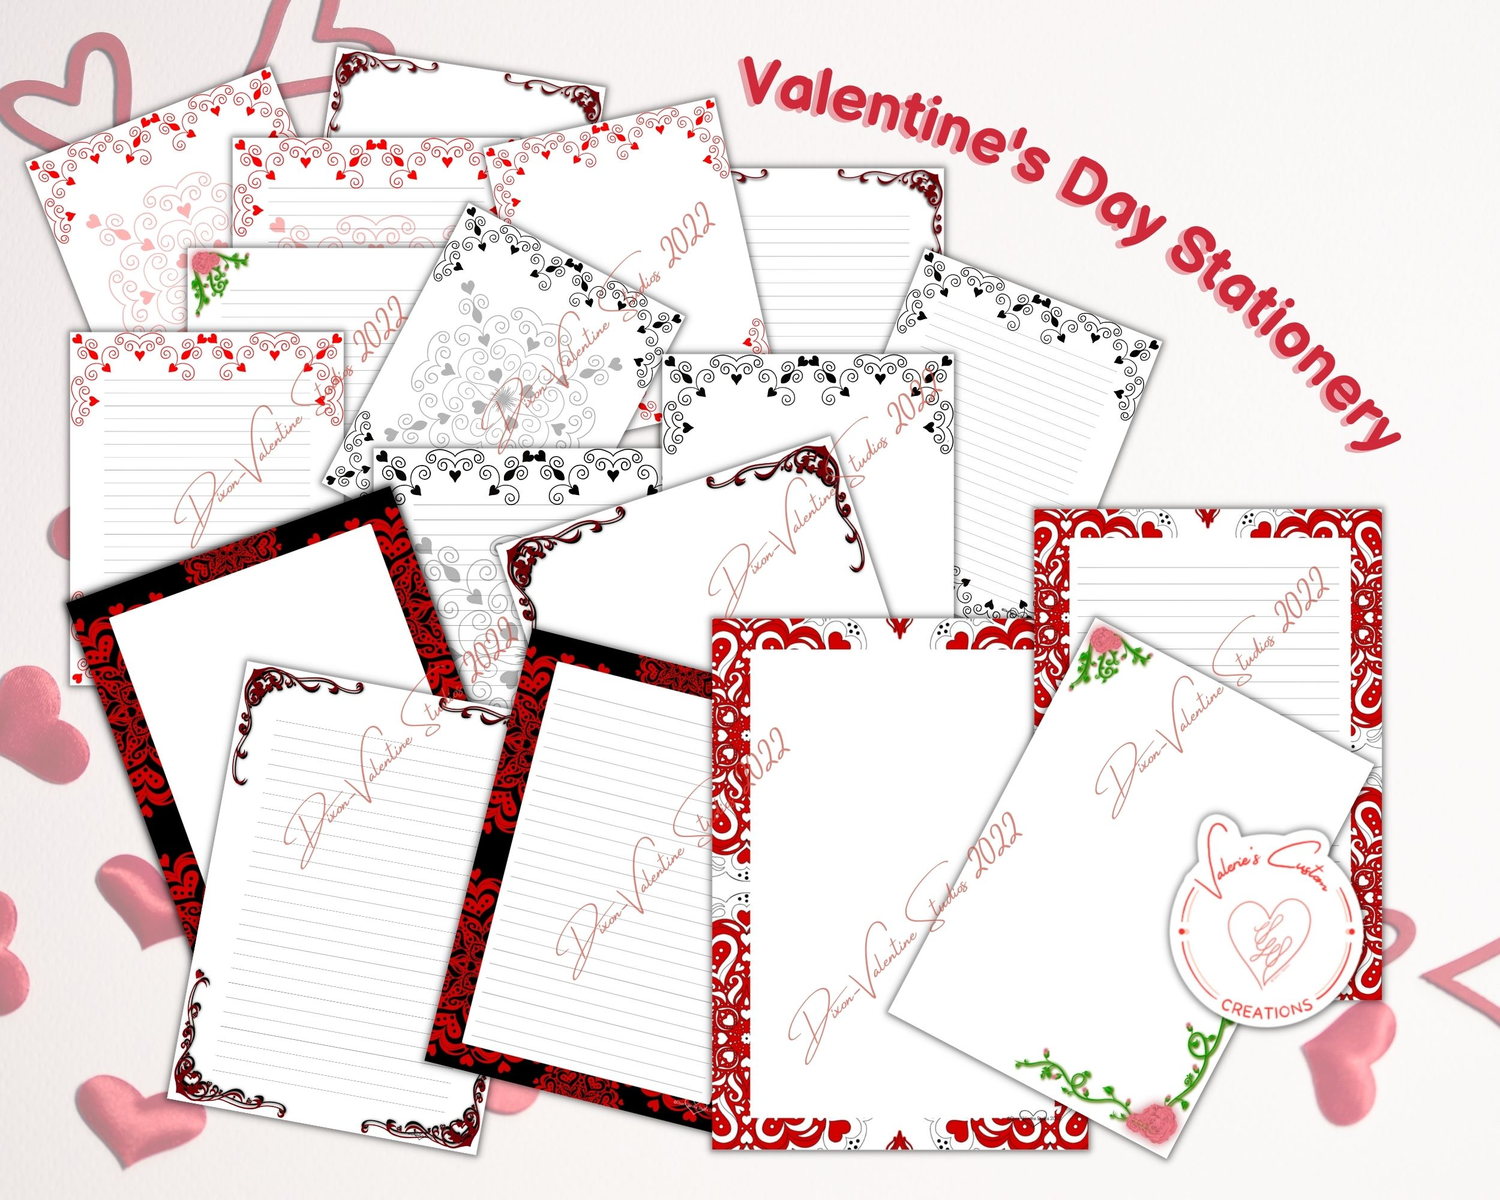 Valentine's Day Stationery